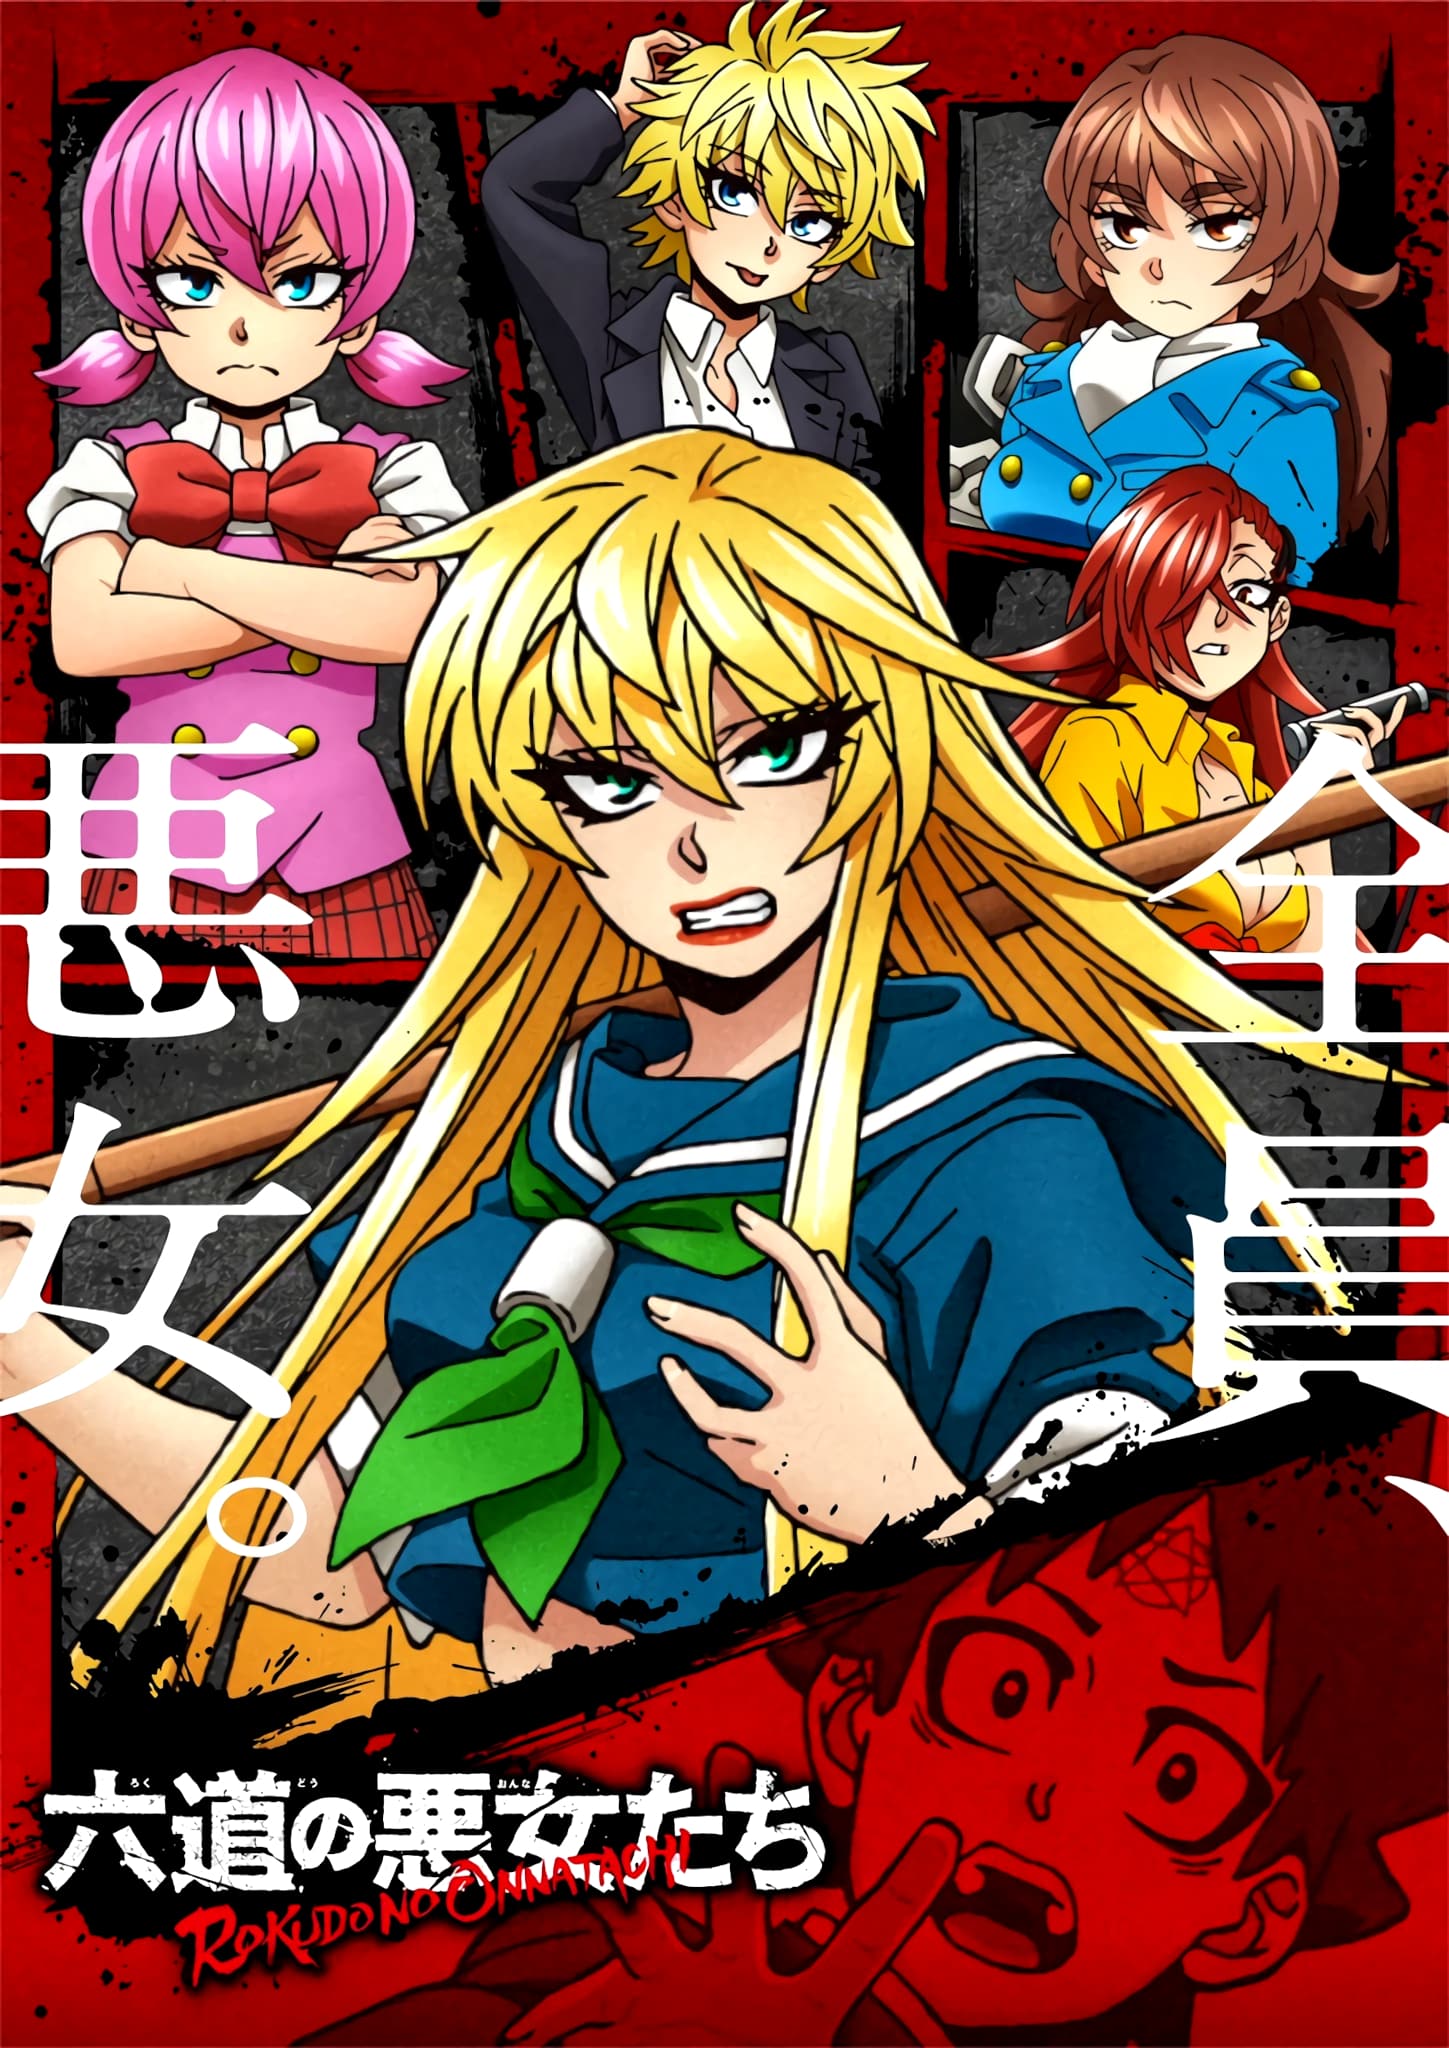 Annonce de la date de sortie de lanime Rokudou no Onna-tachi